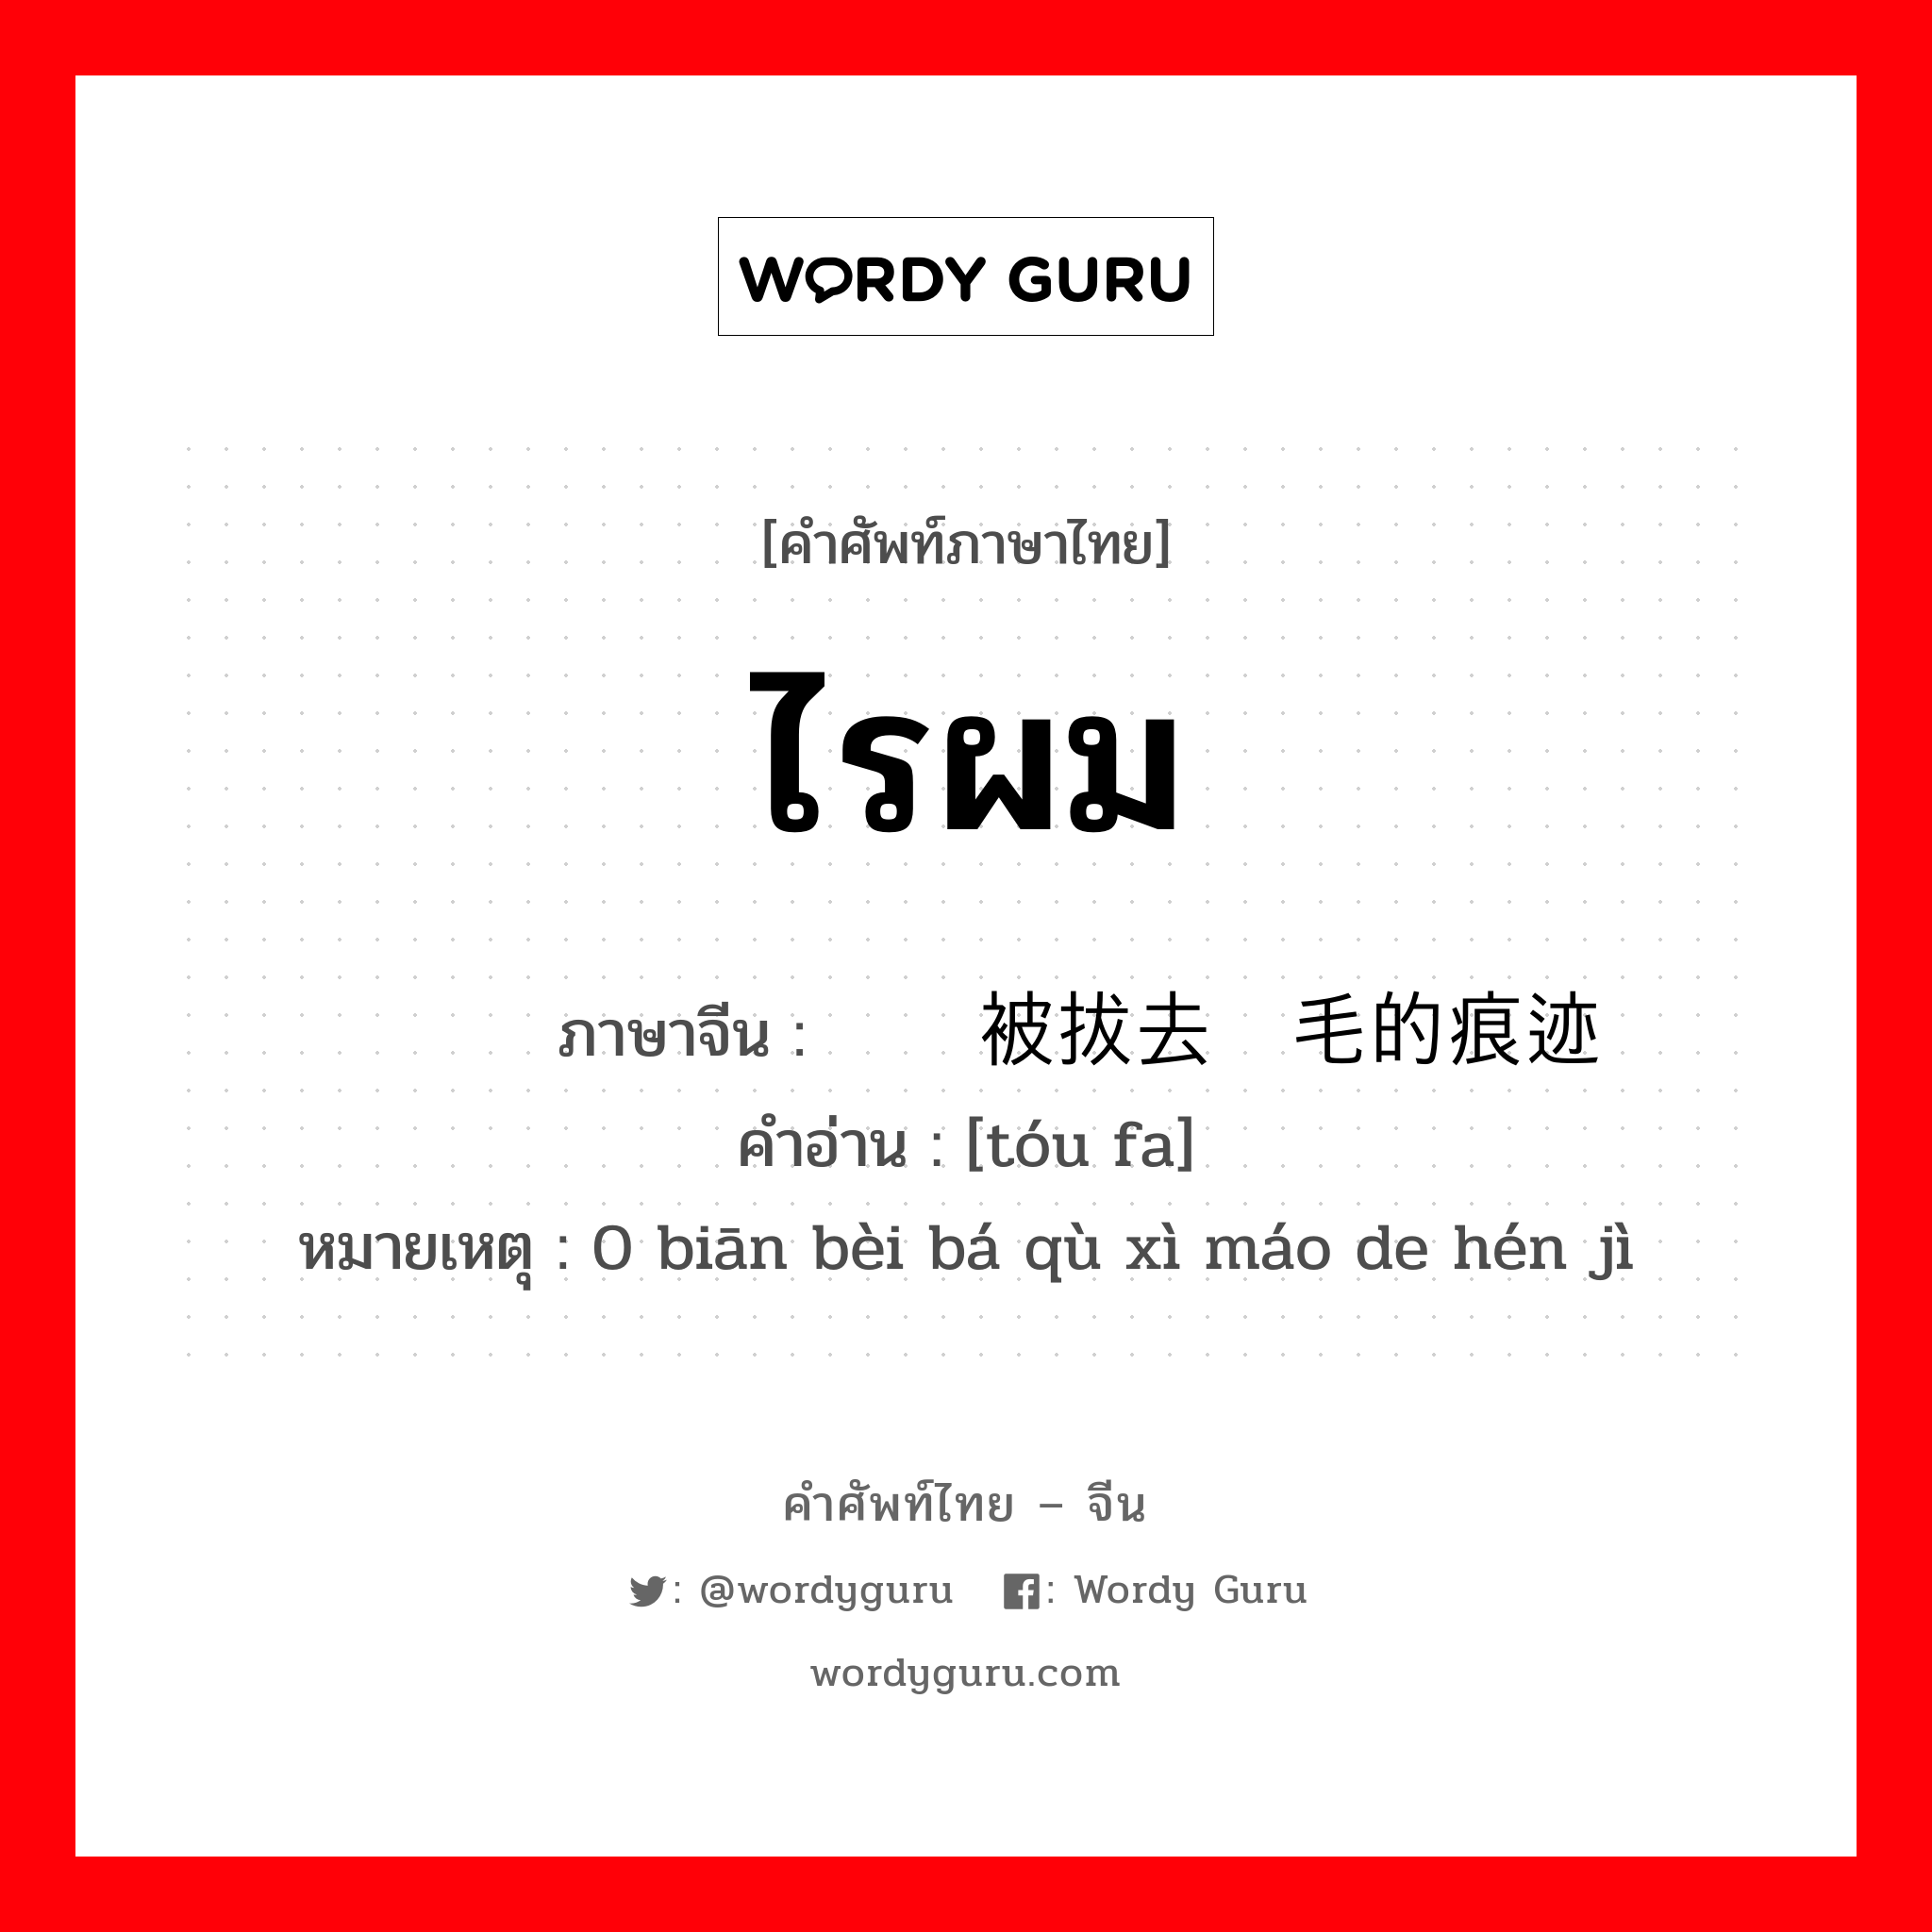 ไรผม ภาษาจีนคืออะไร, คำศัพท์ภาษาไทย - จีน ไรผม ภาษาจีน 头发边被拔去细毛的痕迹 คำอ่าน [tóu fa] หมายเหตุ 0 biān bèi bá qù xì máo de hén jì